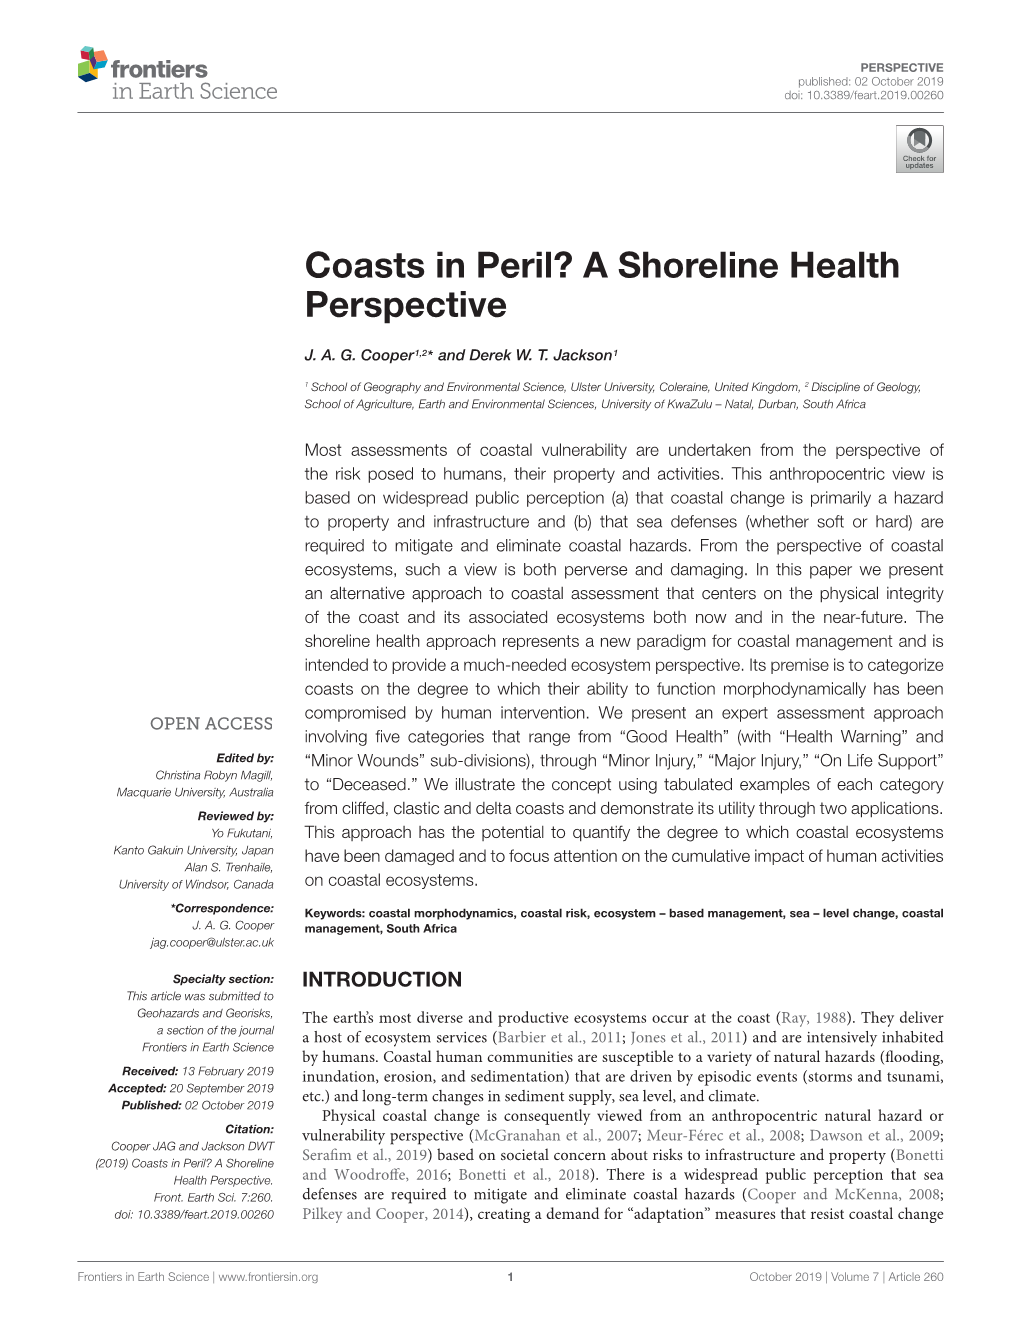 Coasts in Peril? a Shoreline Health Perspective